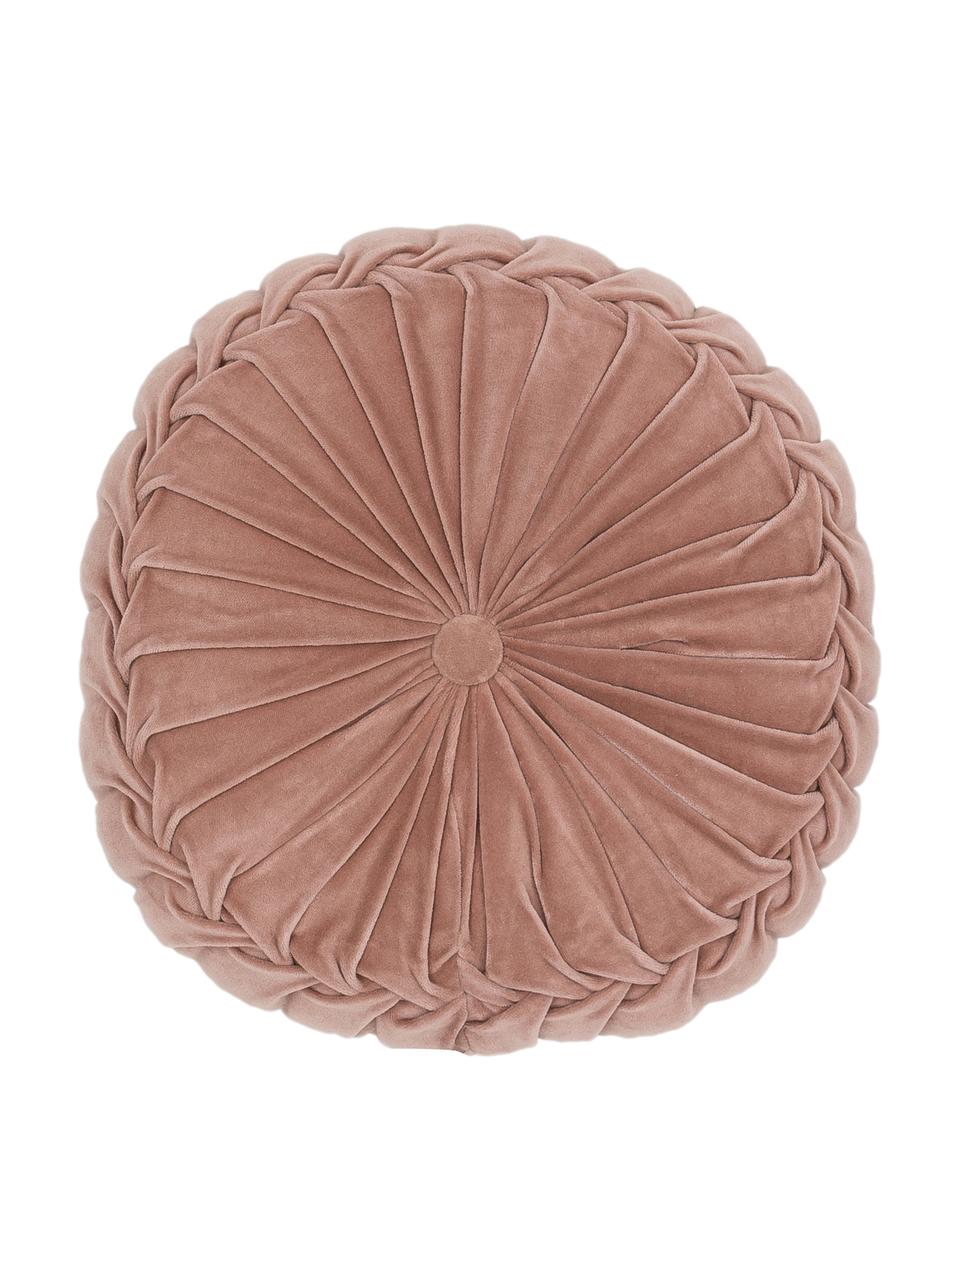 Cuscino rotondo in velluto Kanan, Rosa cipria, Ø 40 cm